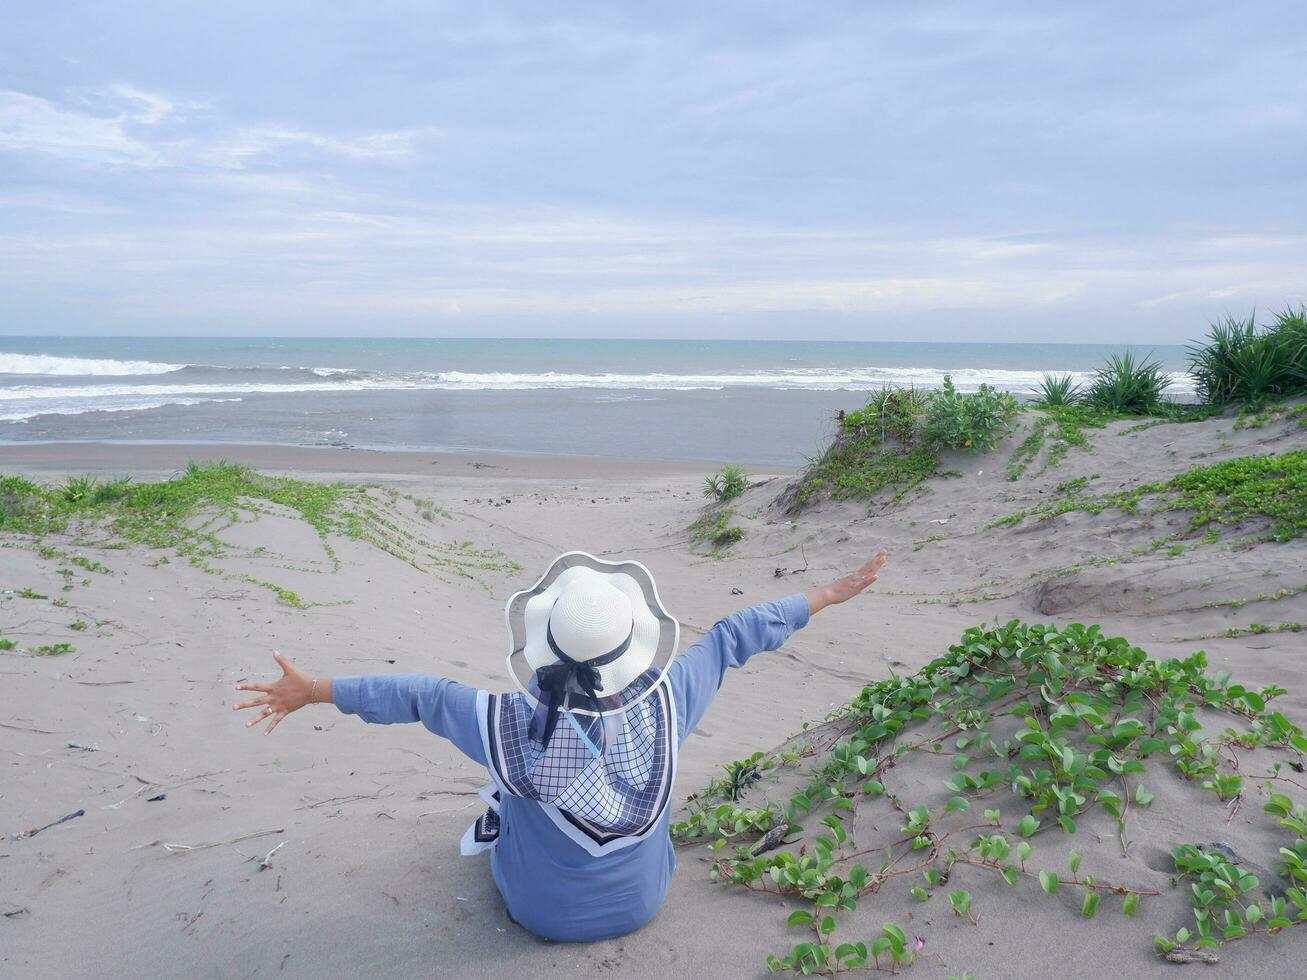 dos de femme au chapeau sur la plage tropicale qui était assise sur le sable et regardait le ciel et la mer, tout en écartant les bras. femmes heureuses.vue sur la plage photo